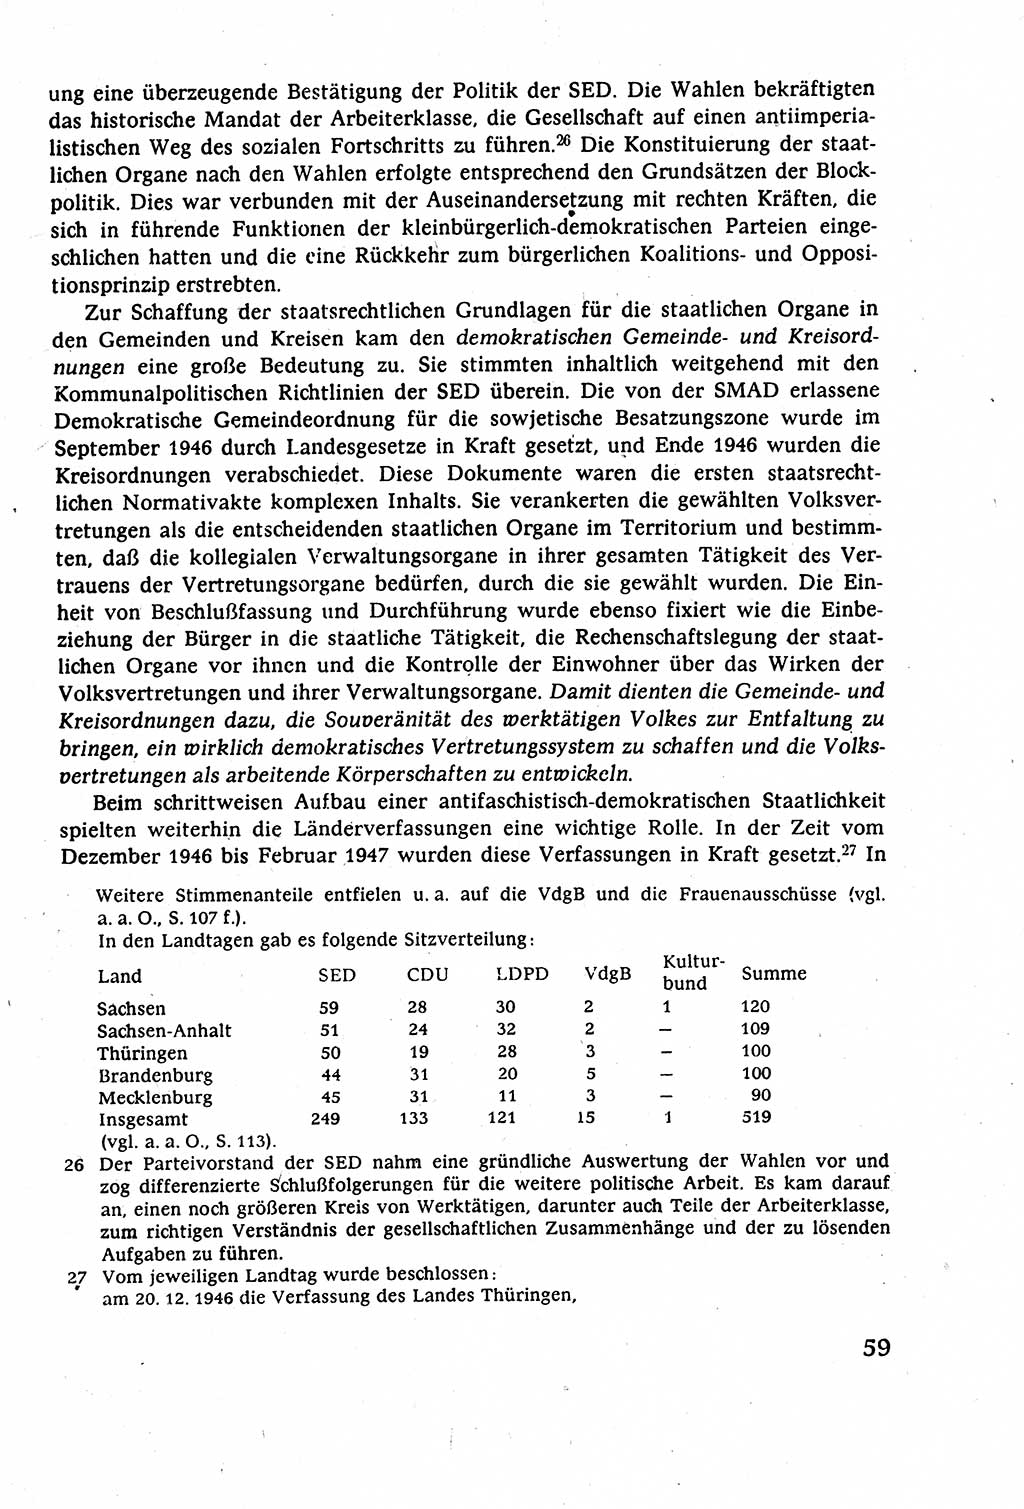 Staatsrecht der DDR (Deutsche Demokratische Republik), Lehrbuch 1977, Seite 59 (St.-R. DDR Lb. 1977, S. 59)